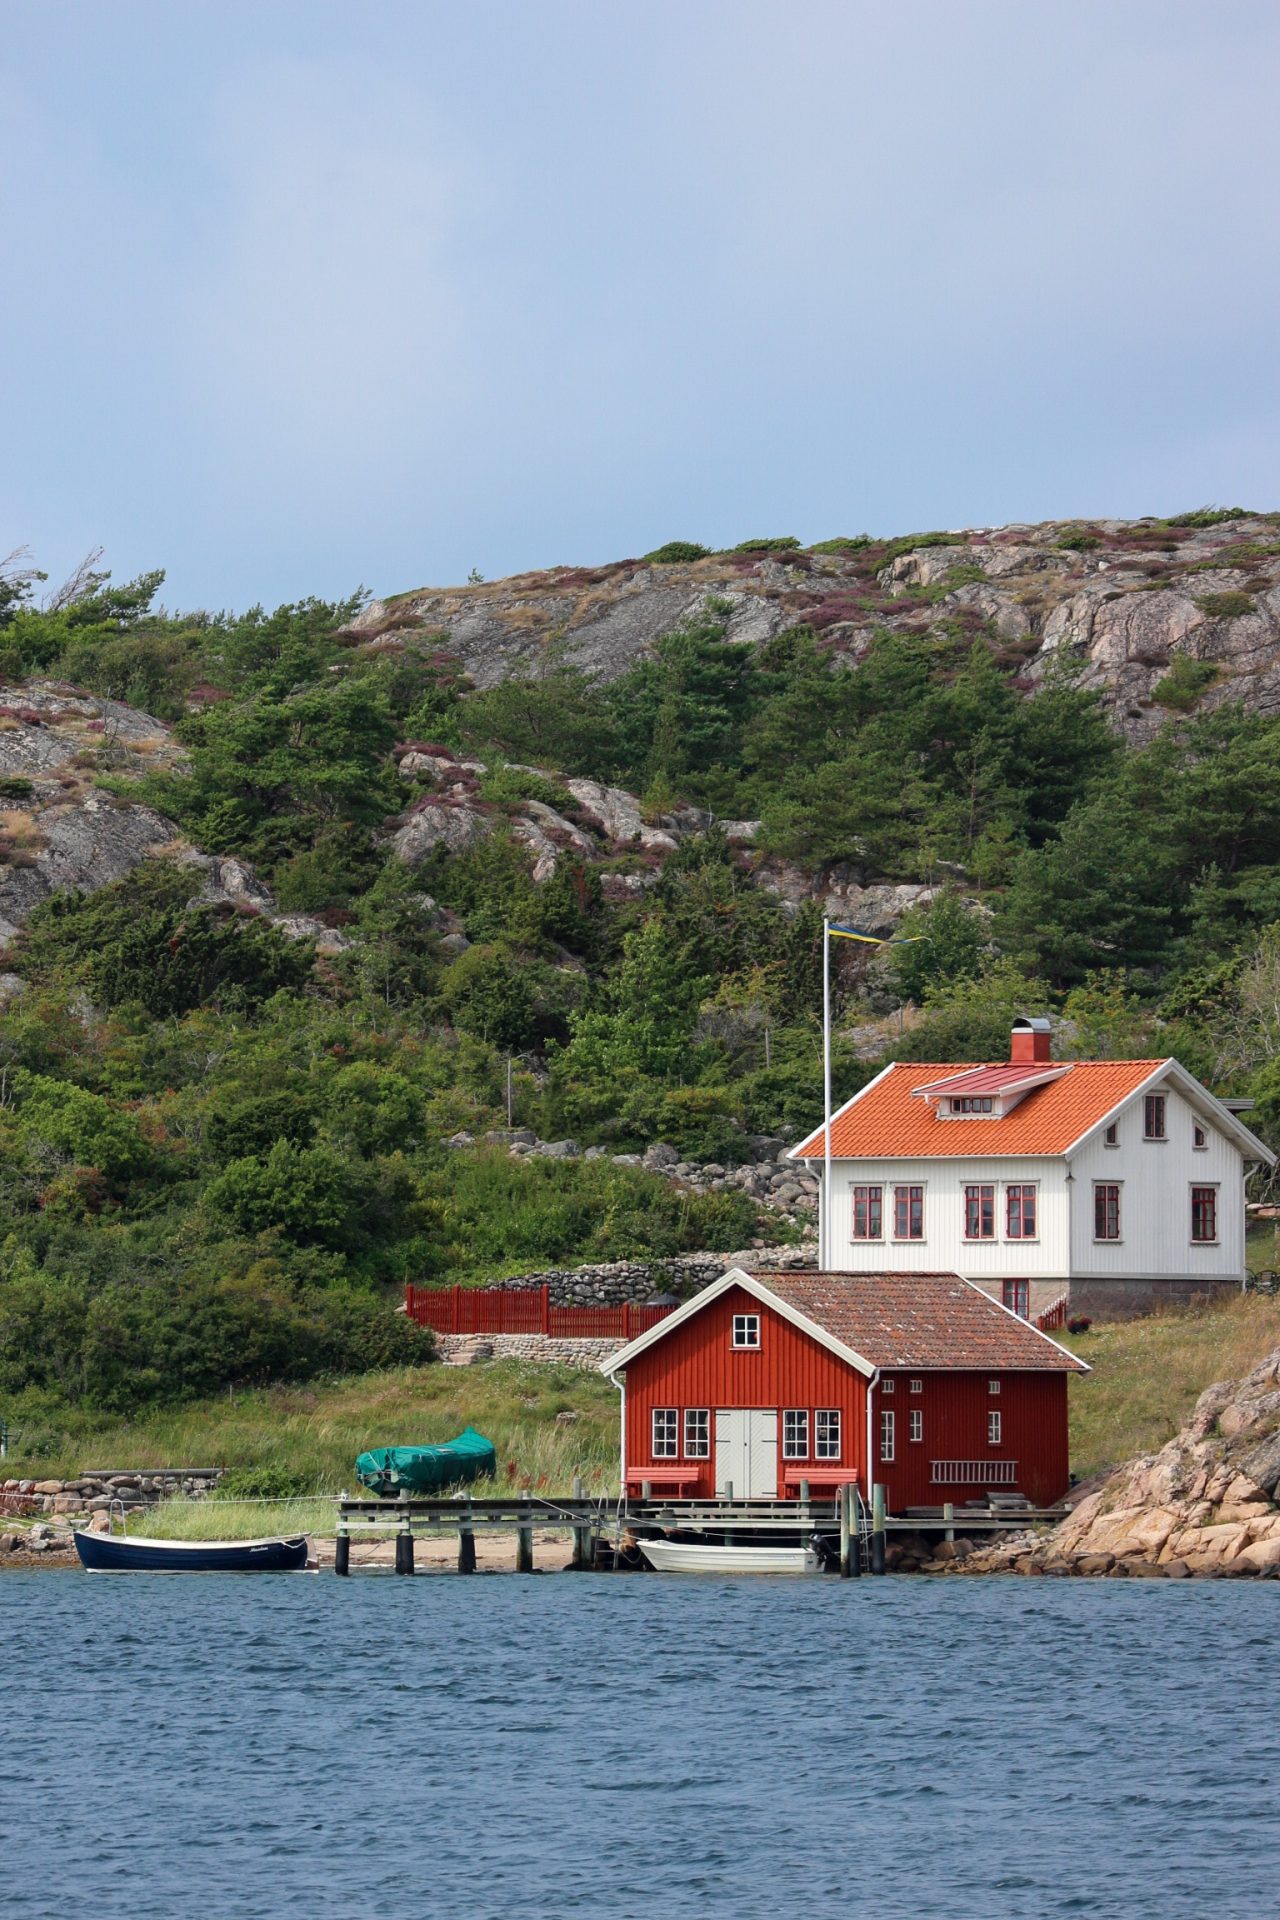 Dès le début de notre road-trip, nous découvrons à Grebbestad, au sud-ouest de la Suède, des cabines rouges en bord de mer